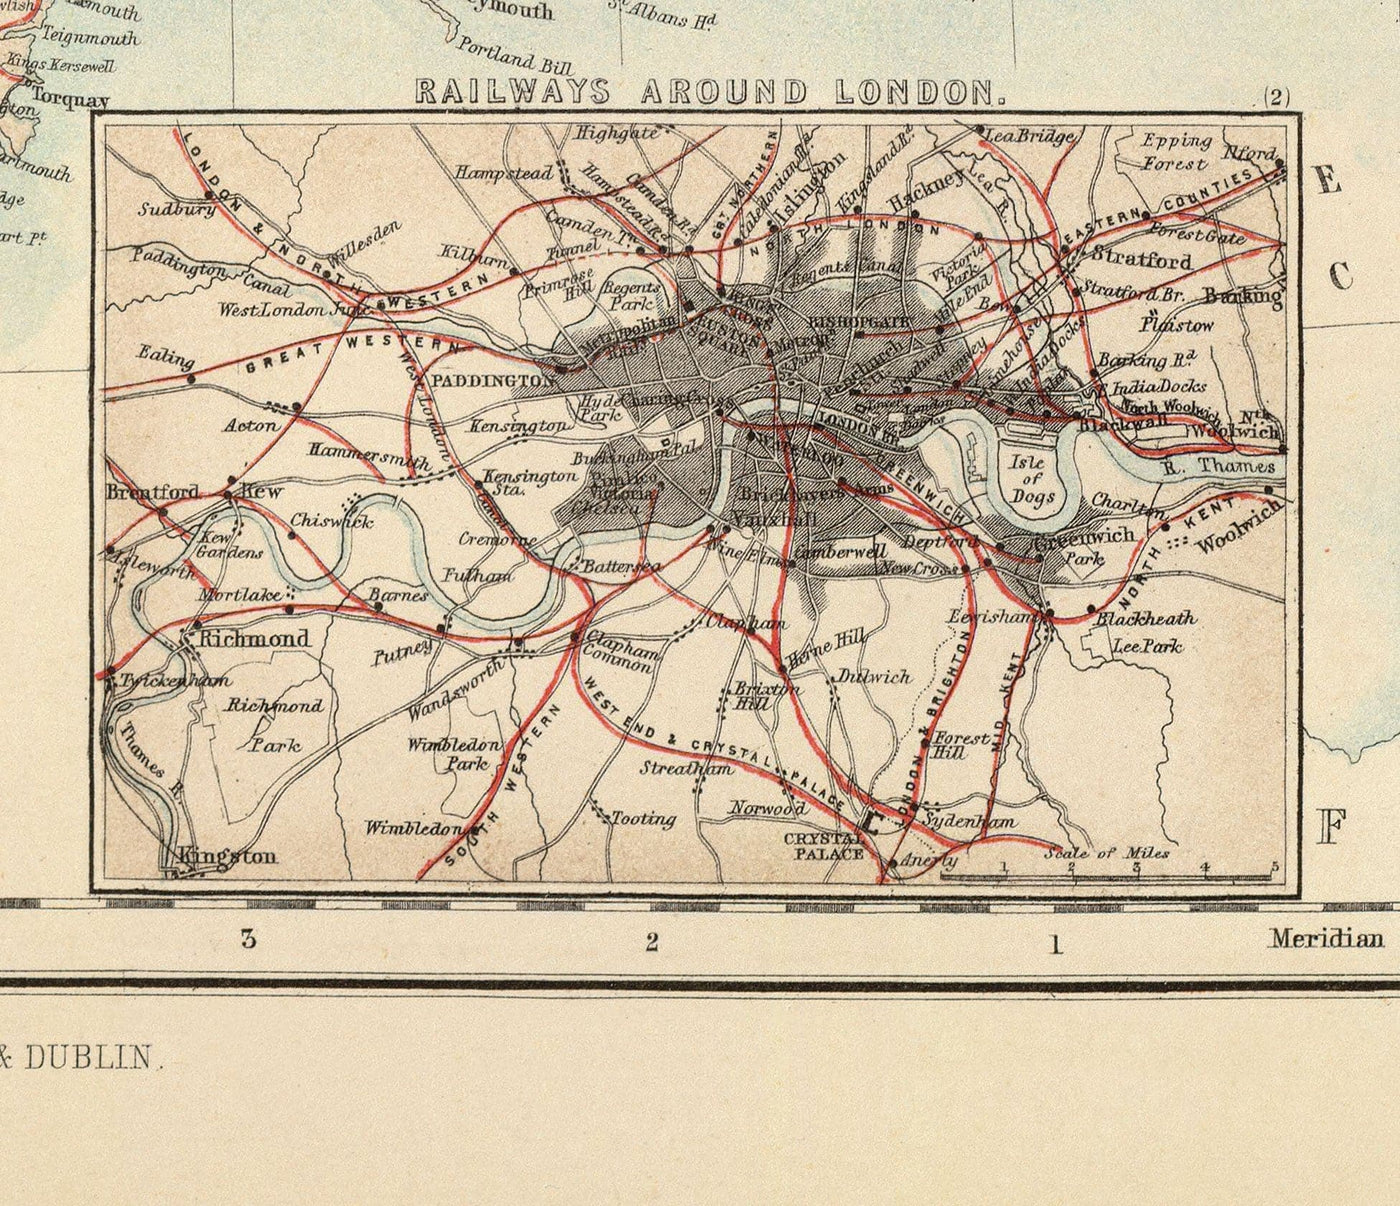 Alte Karte von Railways & Kanälen in den britischen Inseln 1872 von Fullarton - Farbbilde Karte von England, Irland, Schottland, Wales